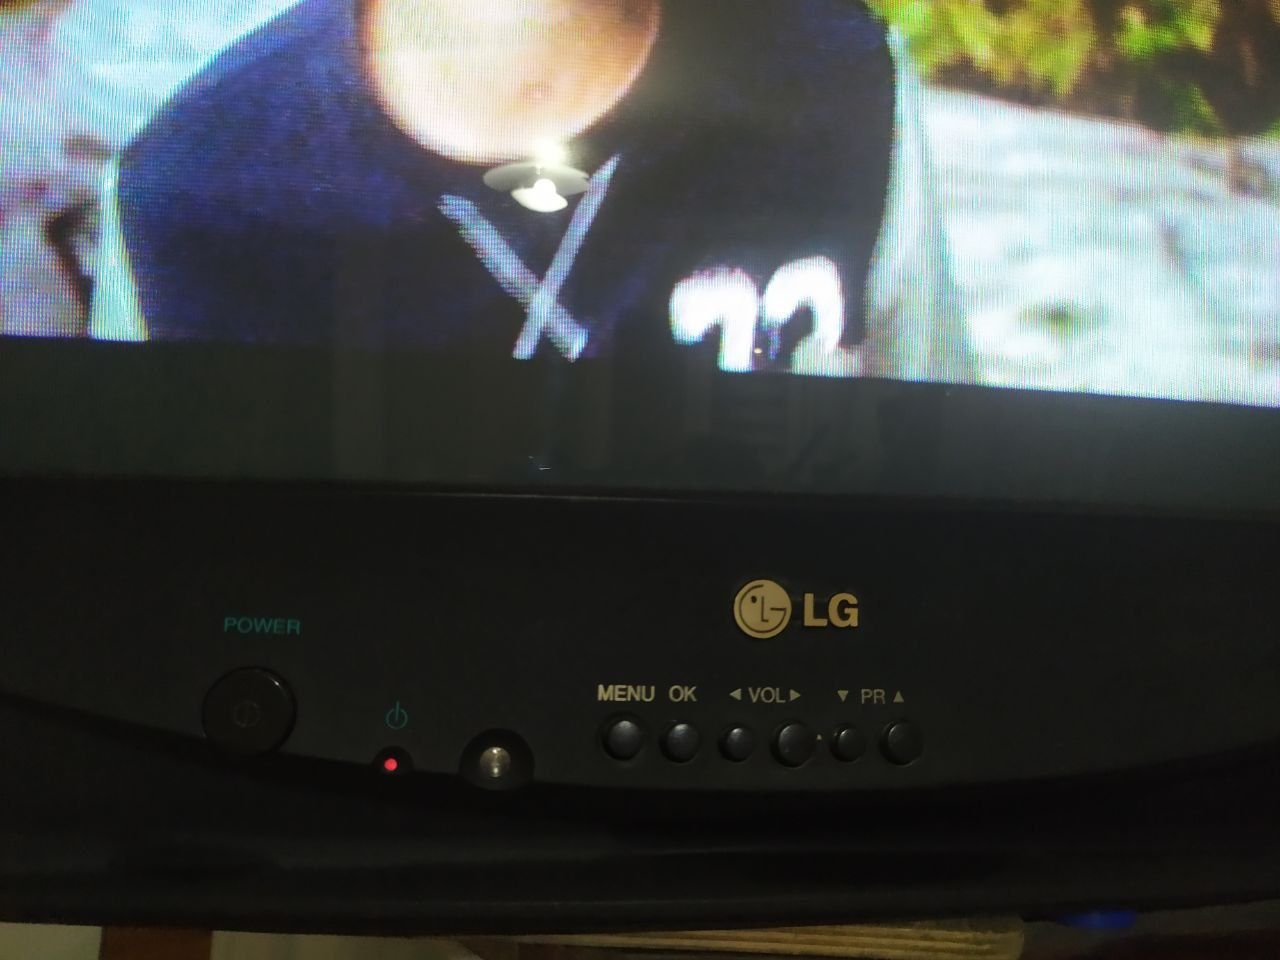 Телевизор LG (Golden eye), б/у, но в хорошем рабочем состоянии